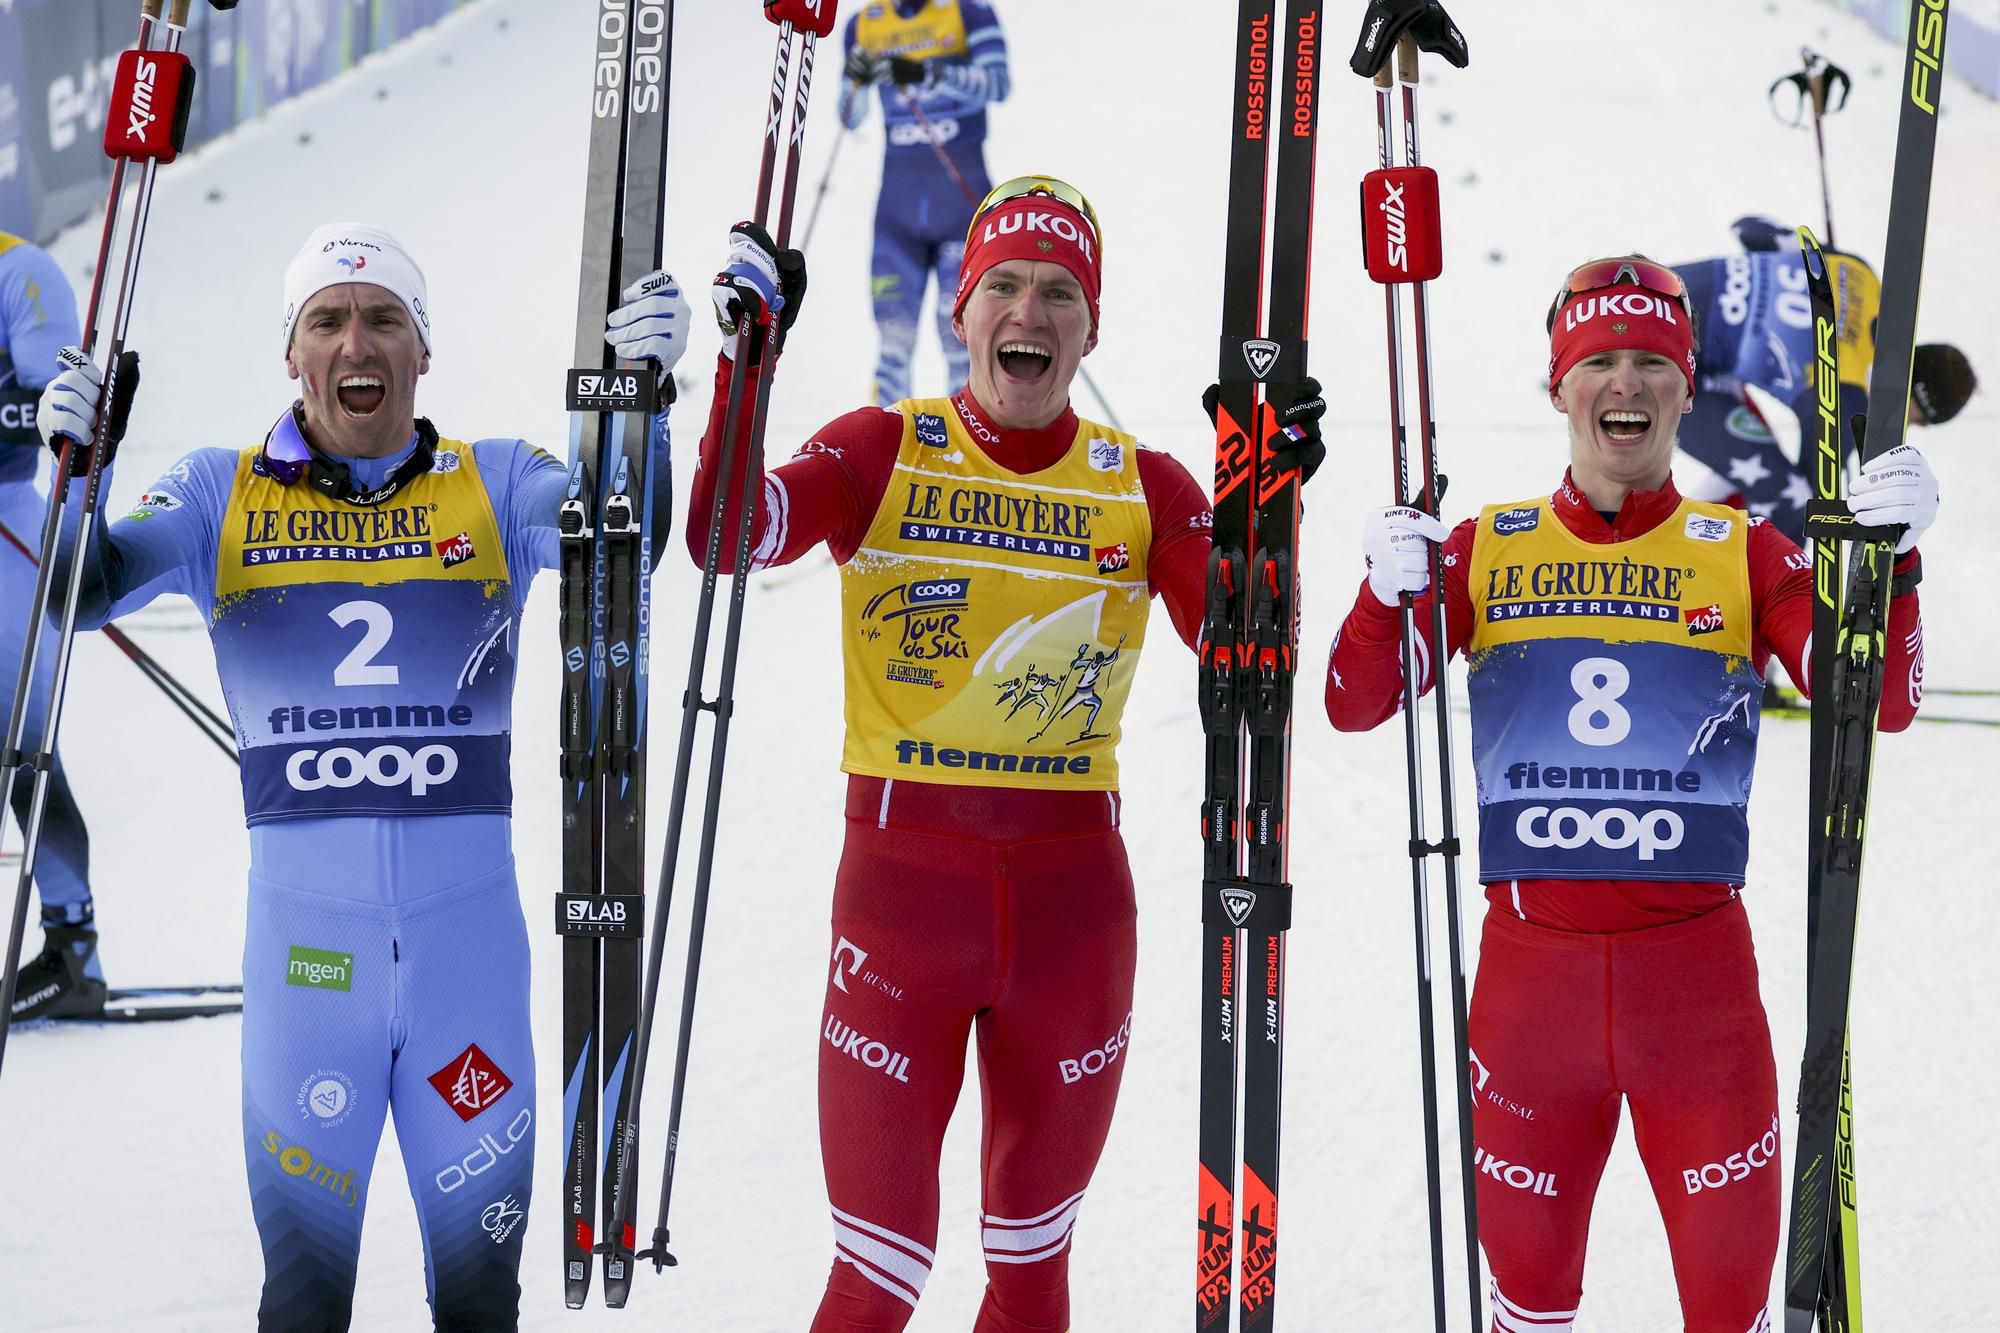 Trojica víťazov Tour de Ski 2021 - v strede víťaž Boľšunov, vľavo druhý Manificat a vpravo tretí Spicov